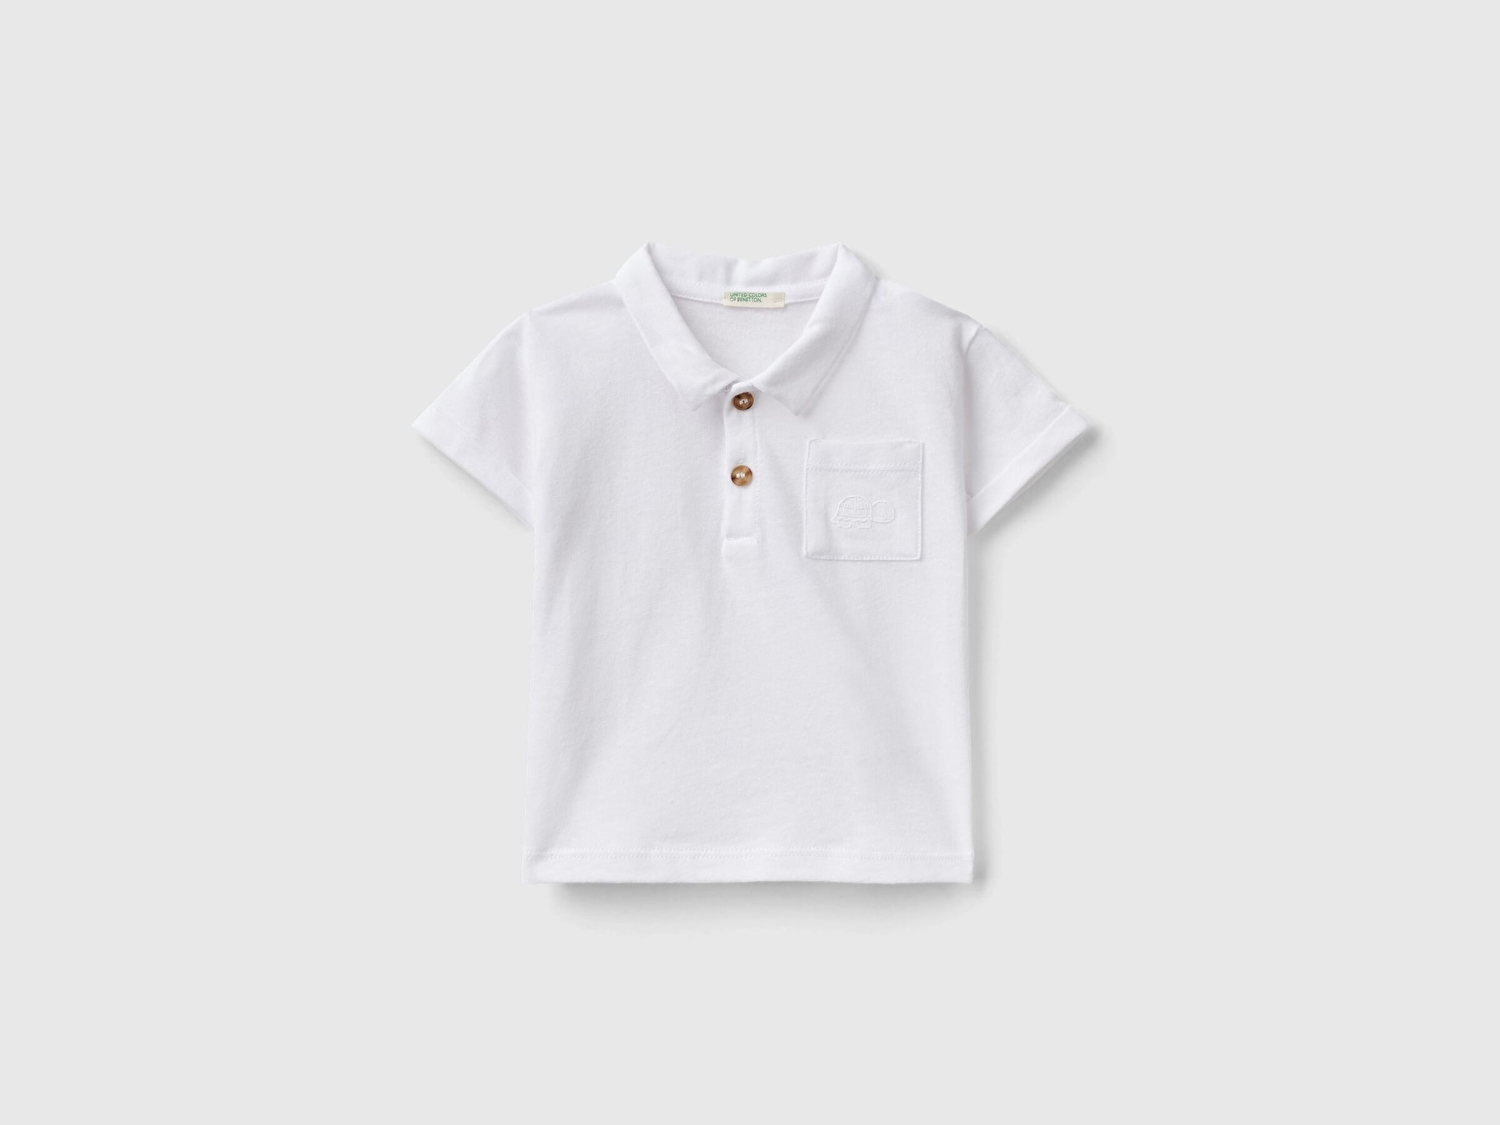 Benetton Bebek Beyaz Göğsü Nakış İşlemeli Yama Cepli Yakası Düğmeli T-Shirt